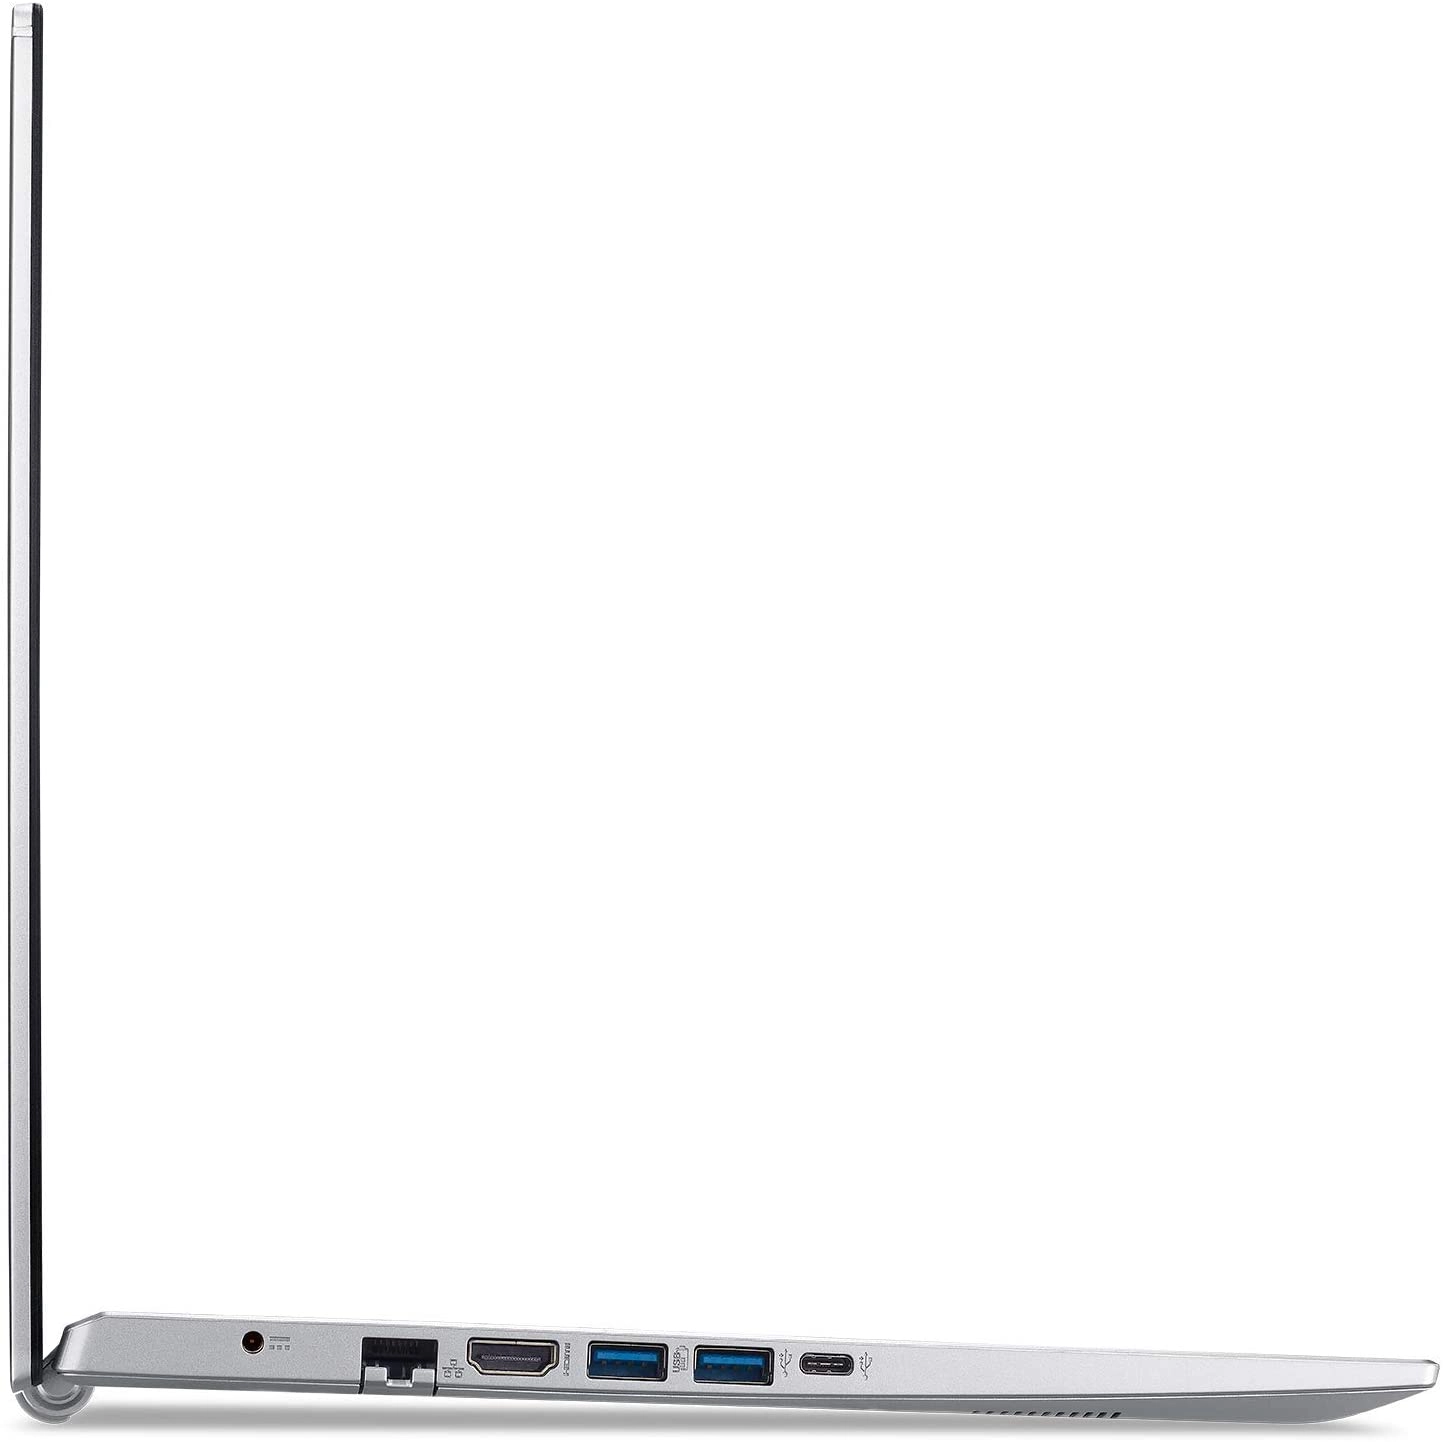 Acer A515-56-73AP laptop image